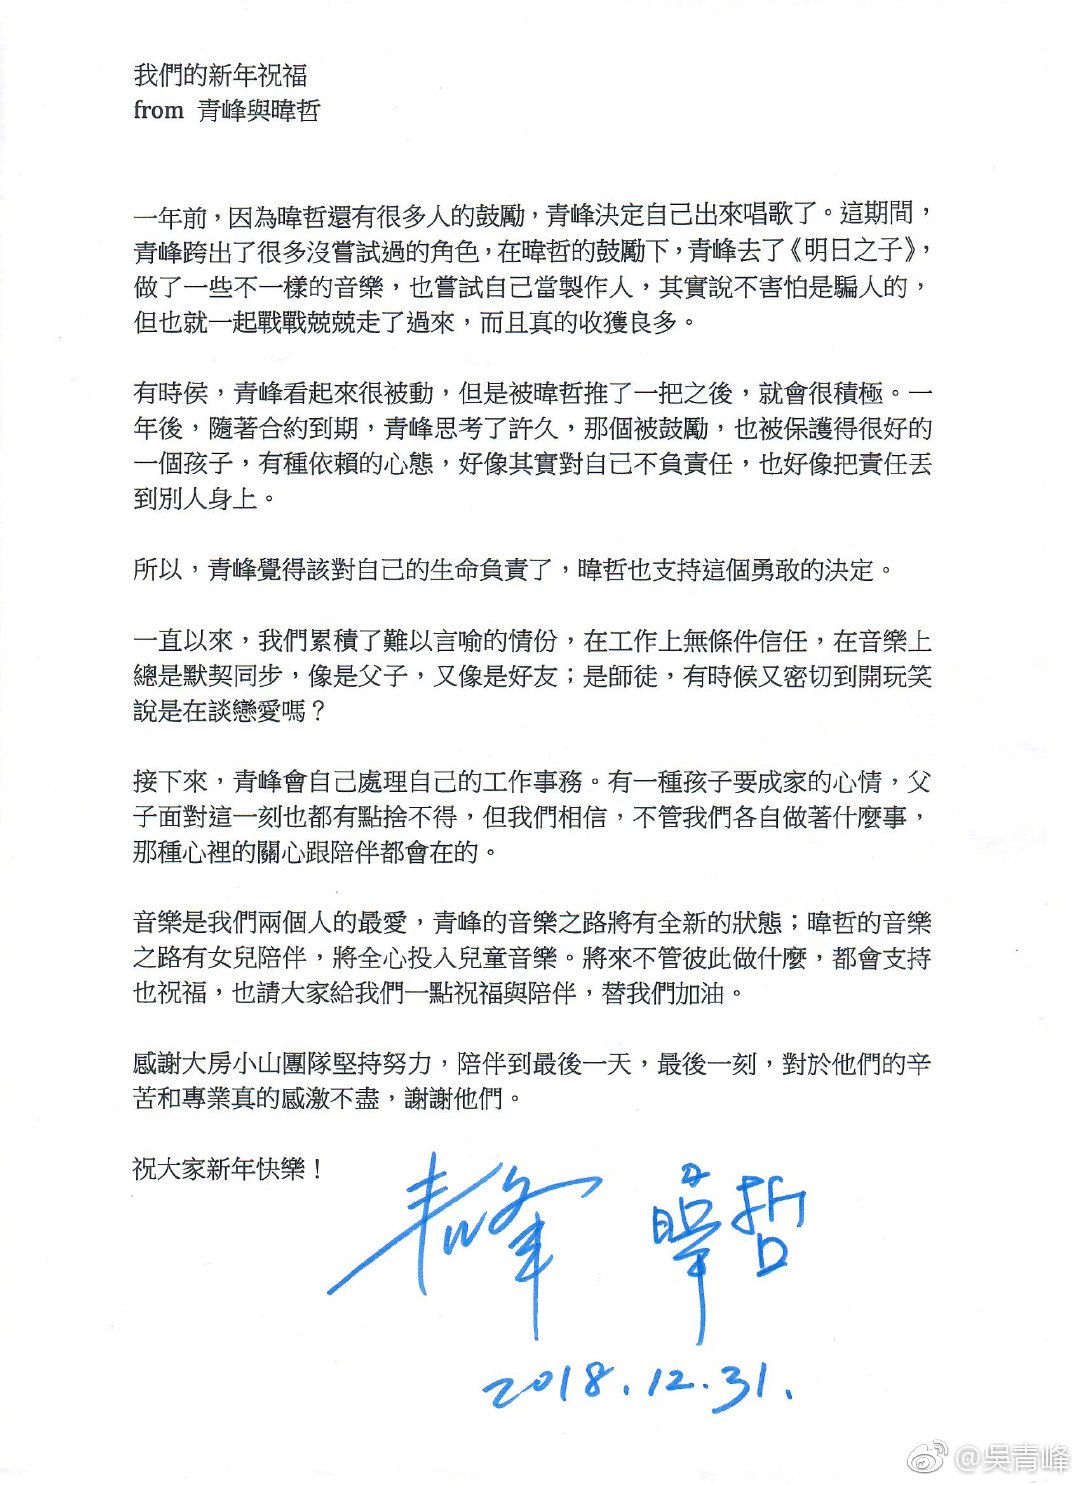 2018 年 12 月 31 日吴青峰和林暐哲发布的共同声明